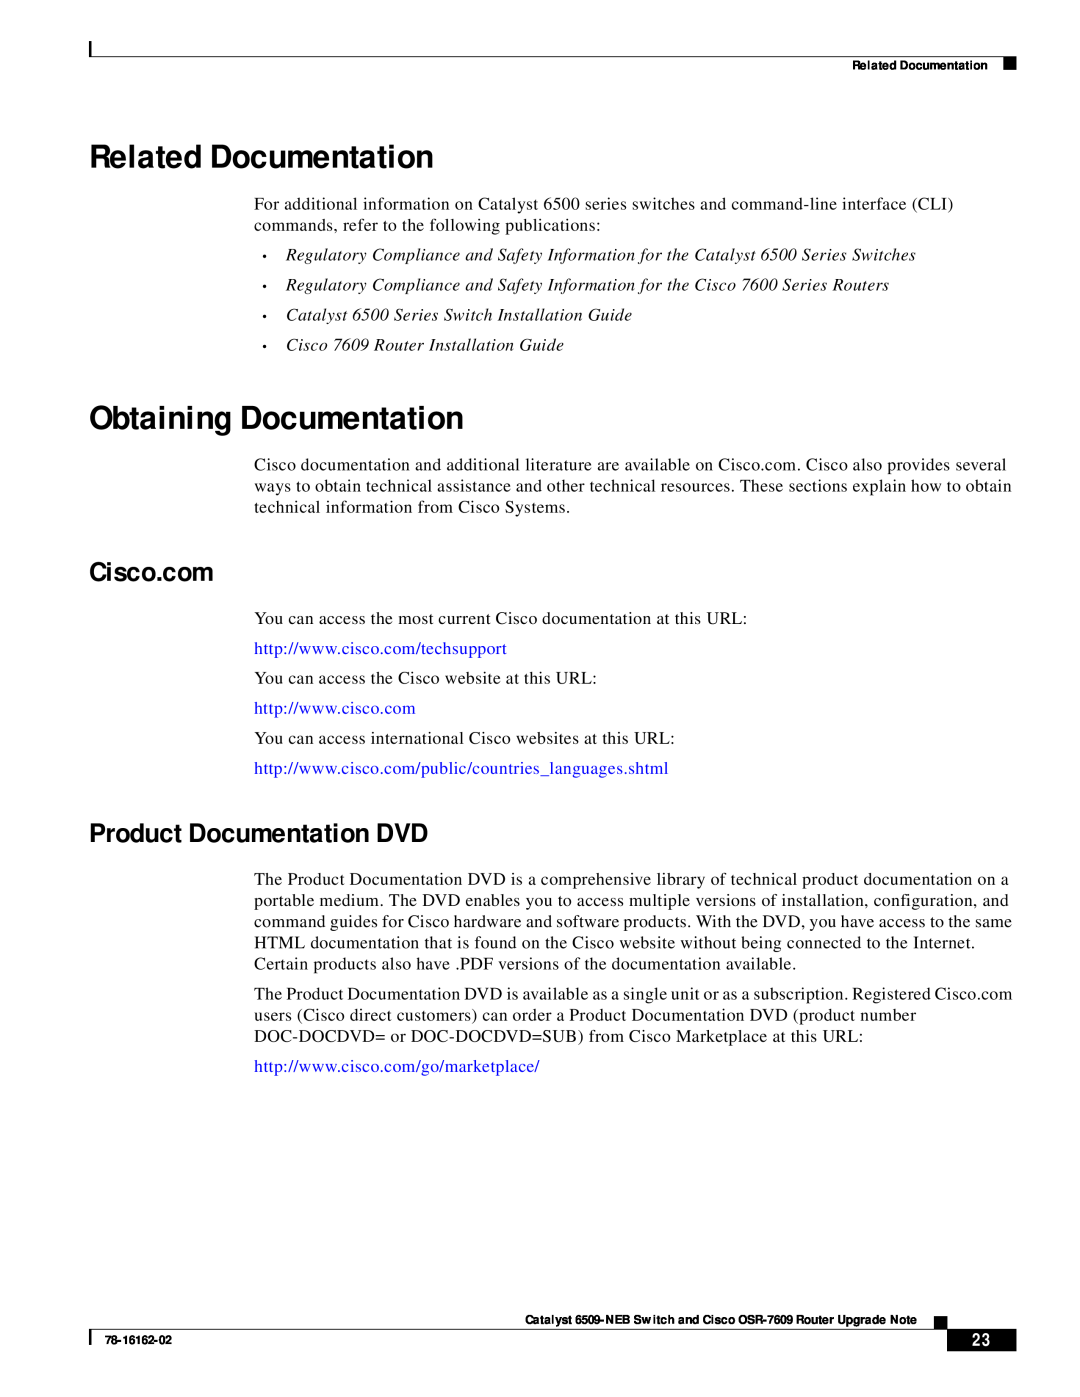 Cisco Systems OSR-7609, 6509-NEB manual Related Documentation, Obtaining Documentation, Cisco.com, Product Documentation DVD 